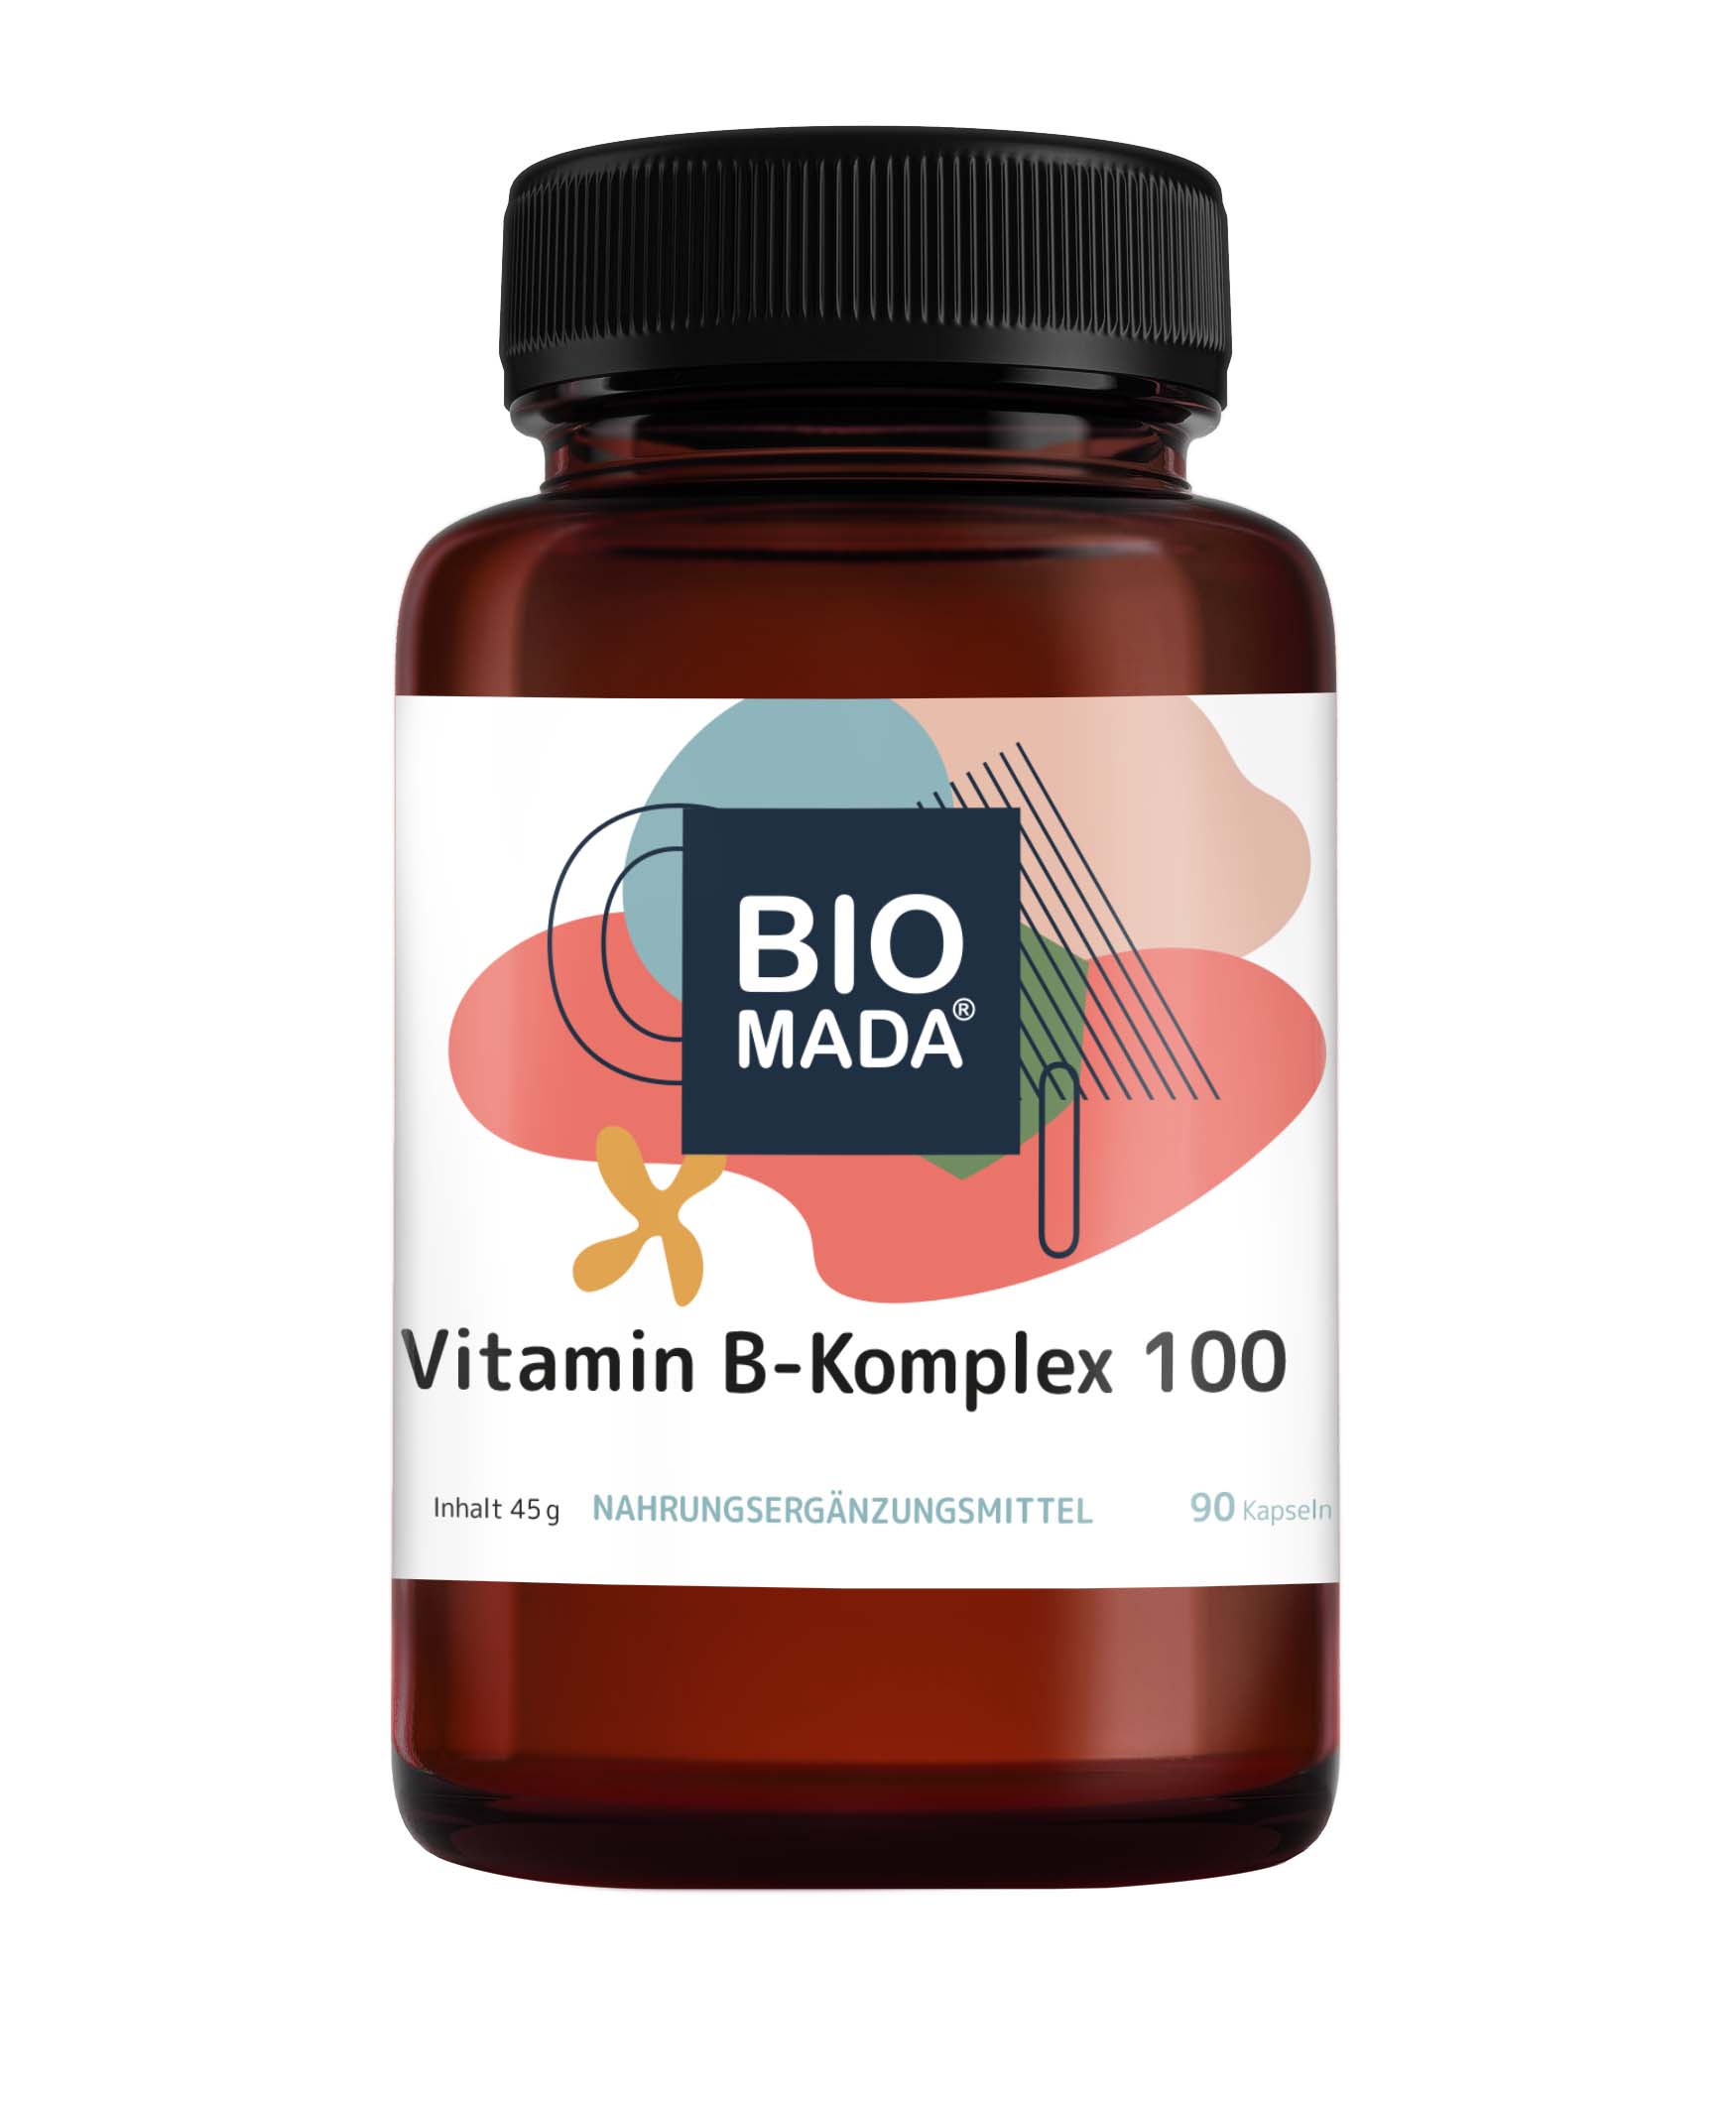 Vitamin B-Komplex 100